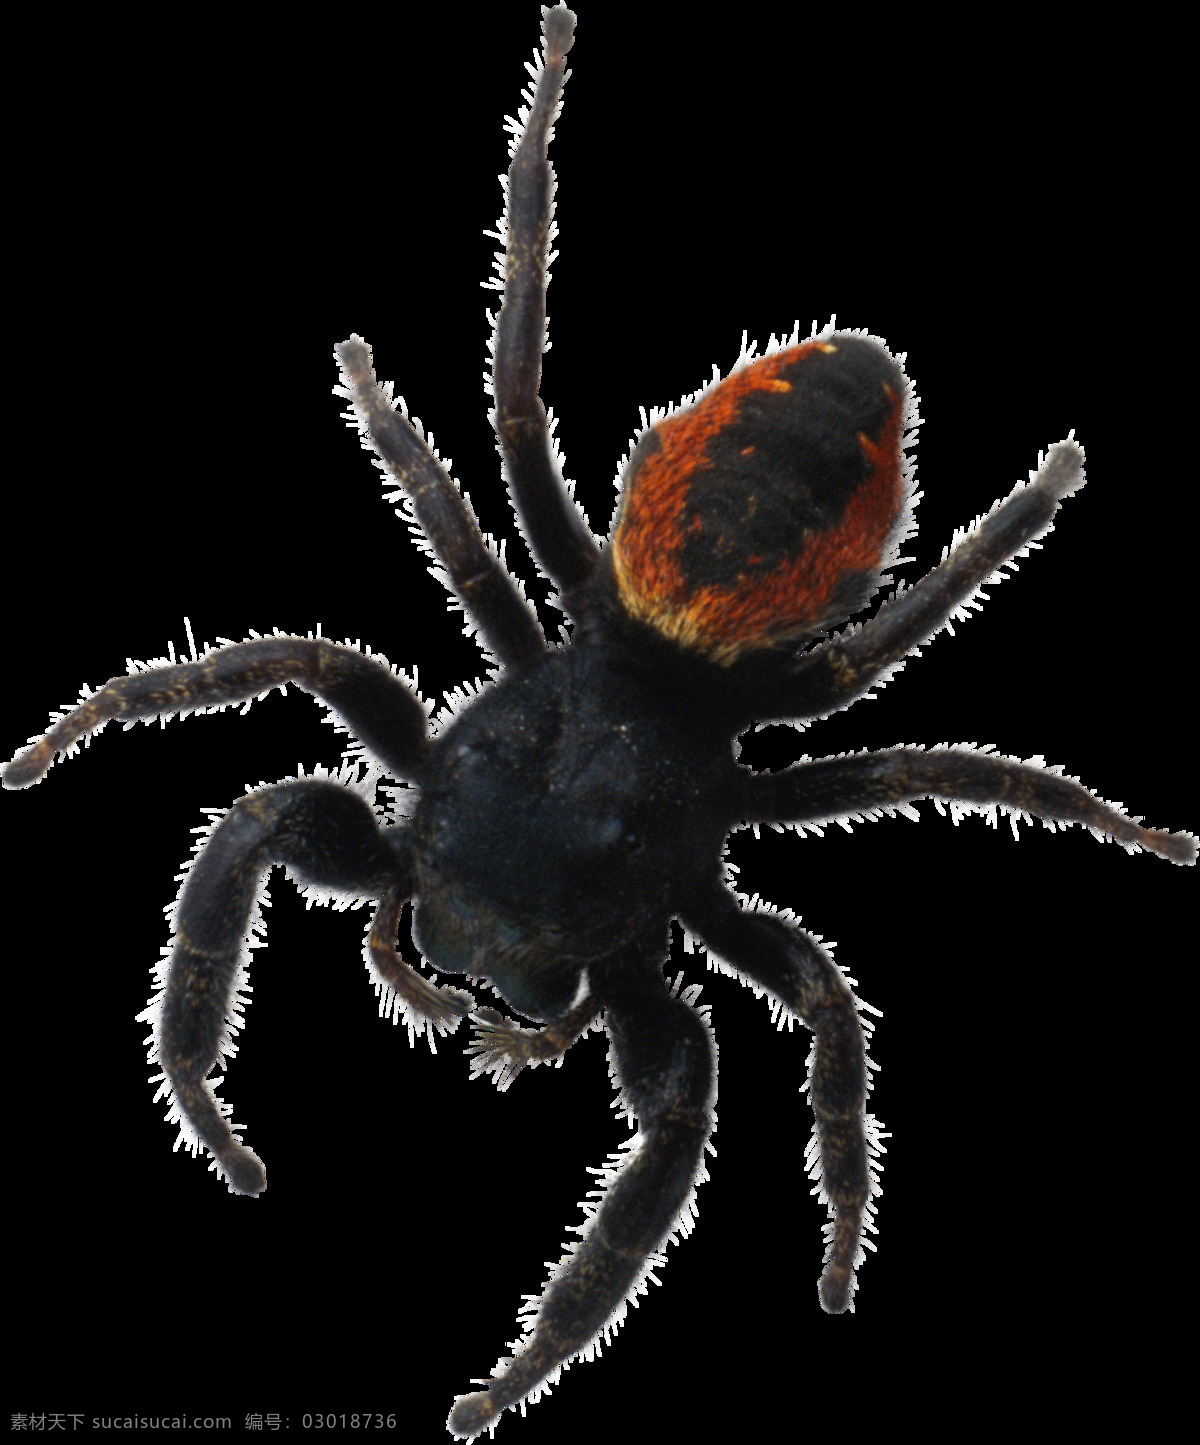 黑色昆虫蜘蛛 蜘蛛 黑色蜘蛛 昆虫 空白蜘蛛 生物 自然动物 动物图谱 免扣 生物世界